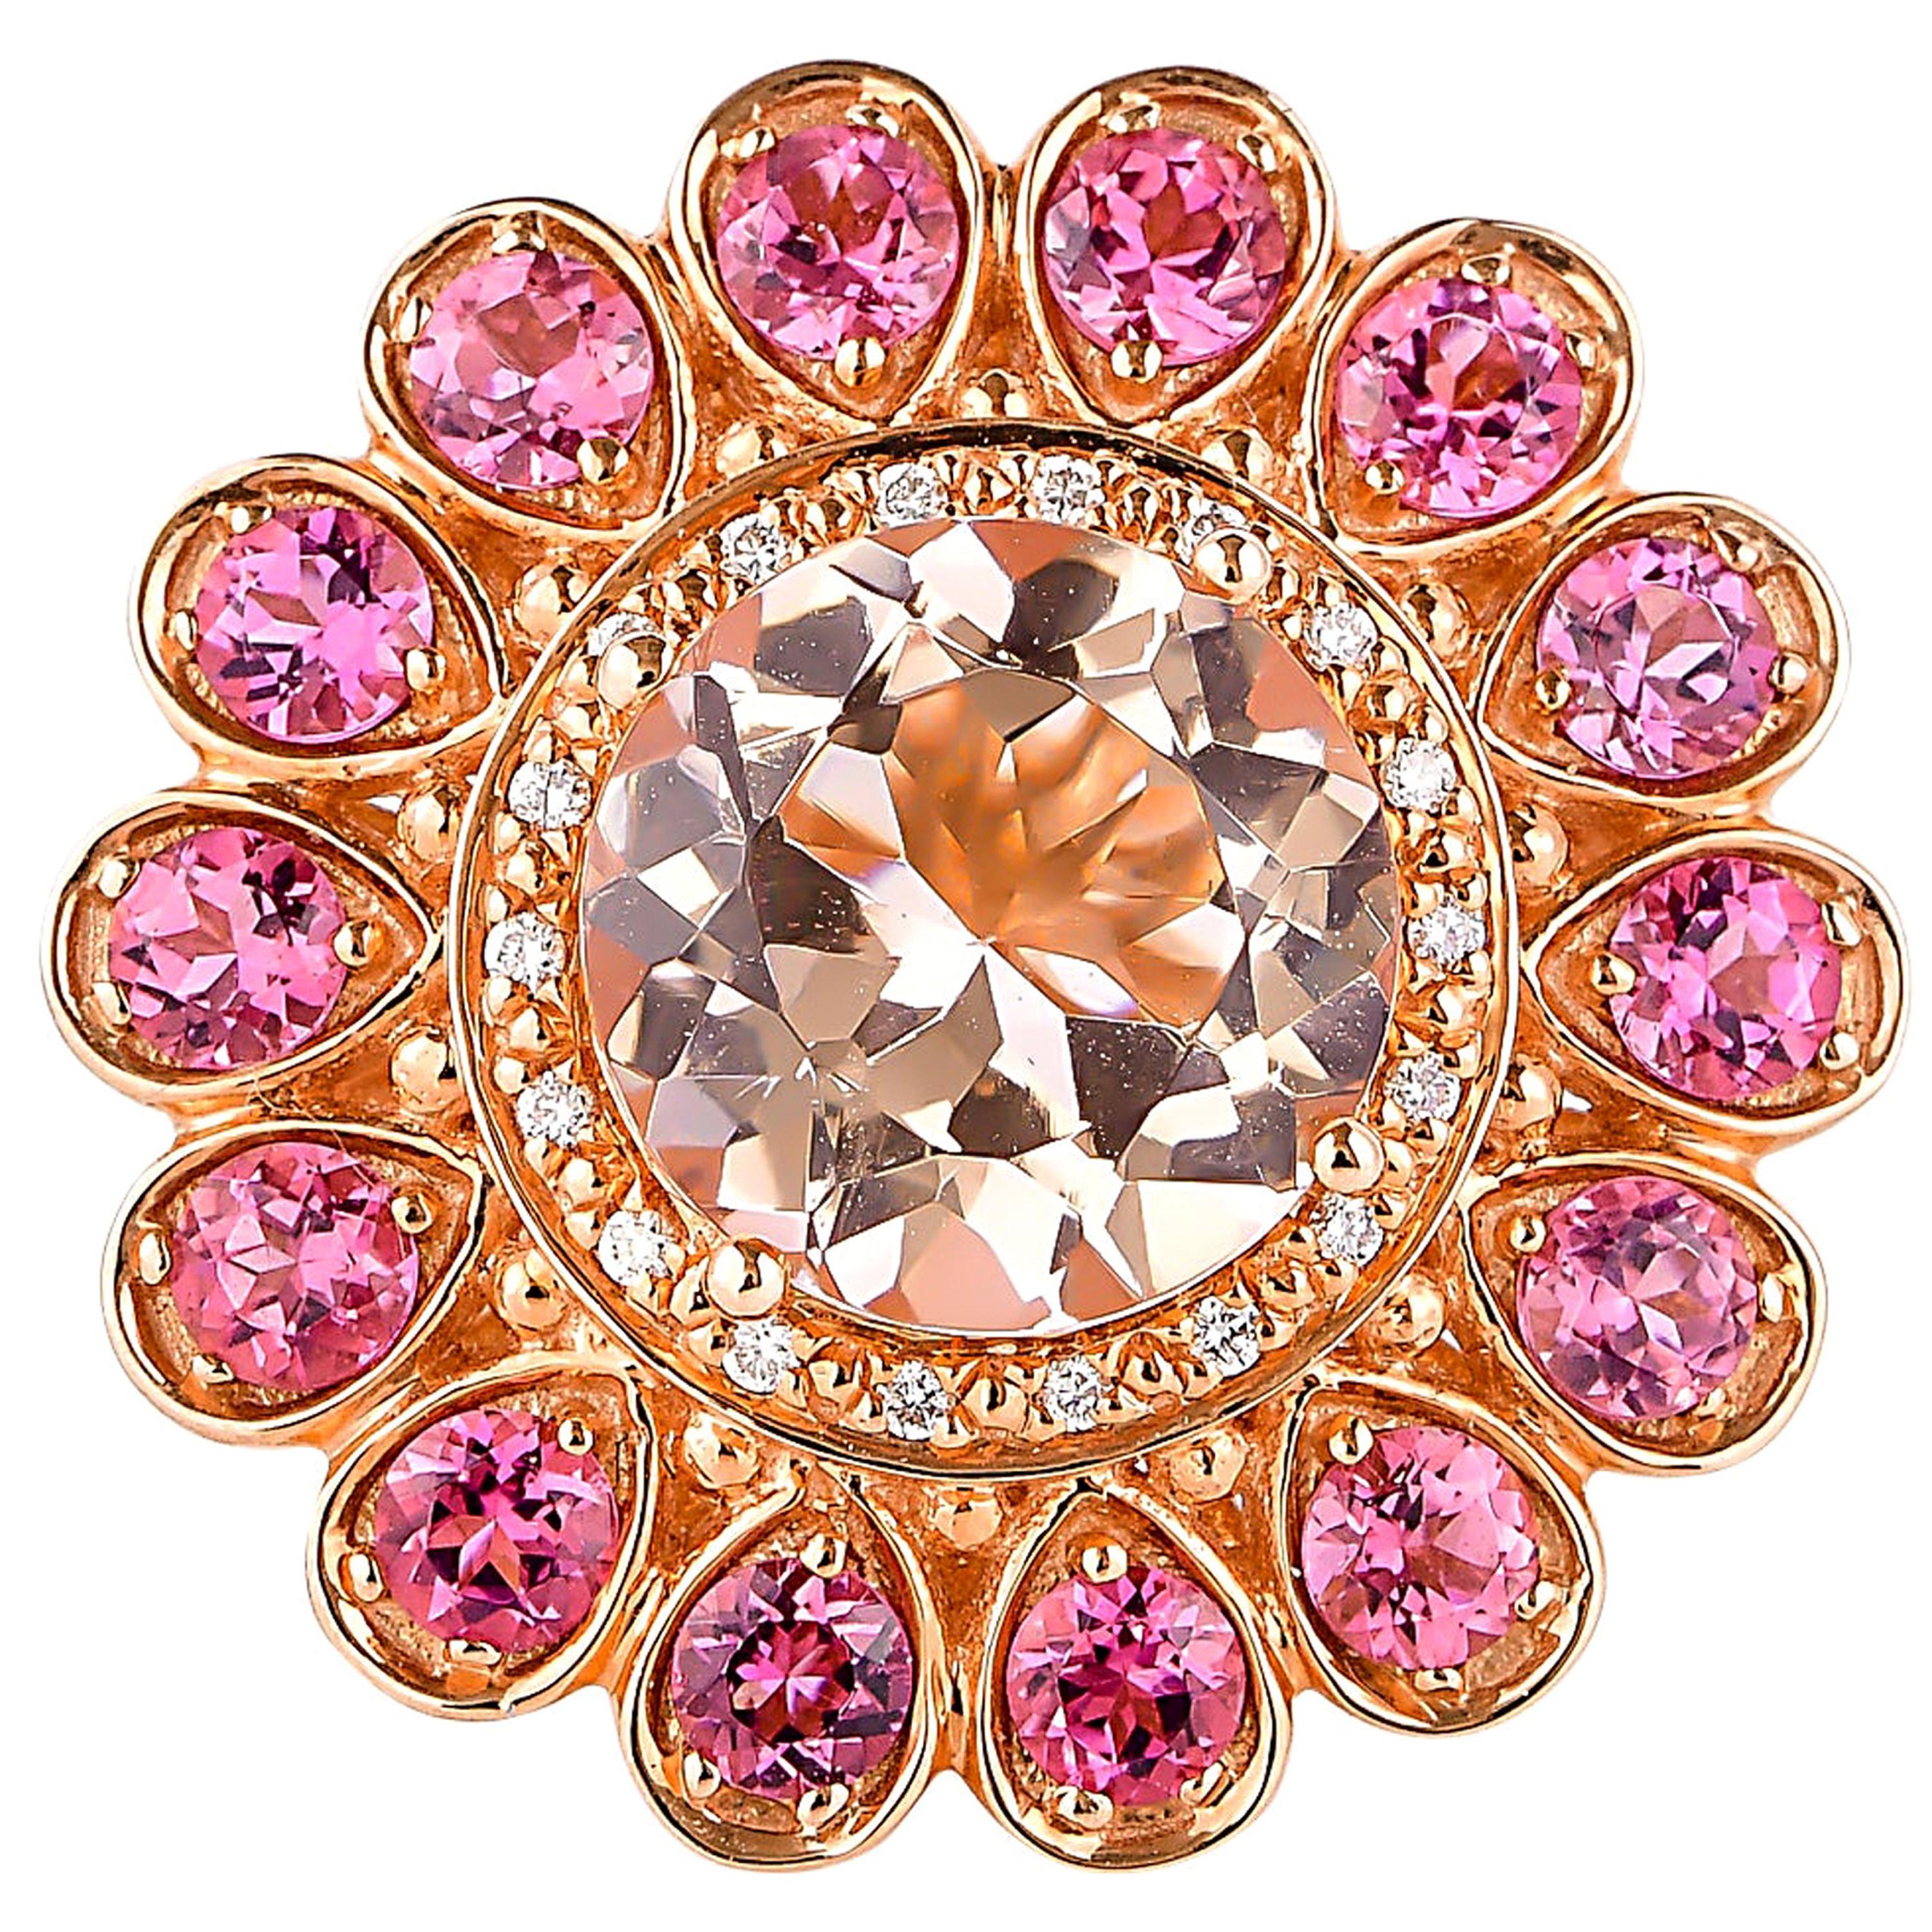 3.22 Carat Morganite, Pink Tourmaline and Diamond Ring in 18 Karat Rose Gold